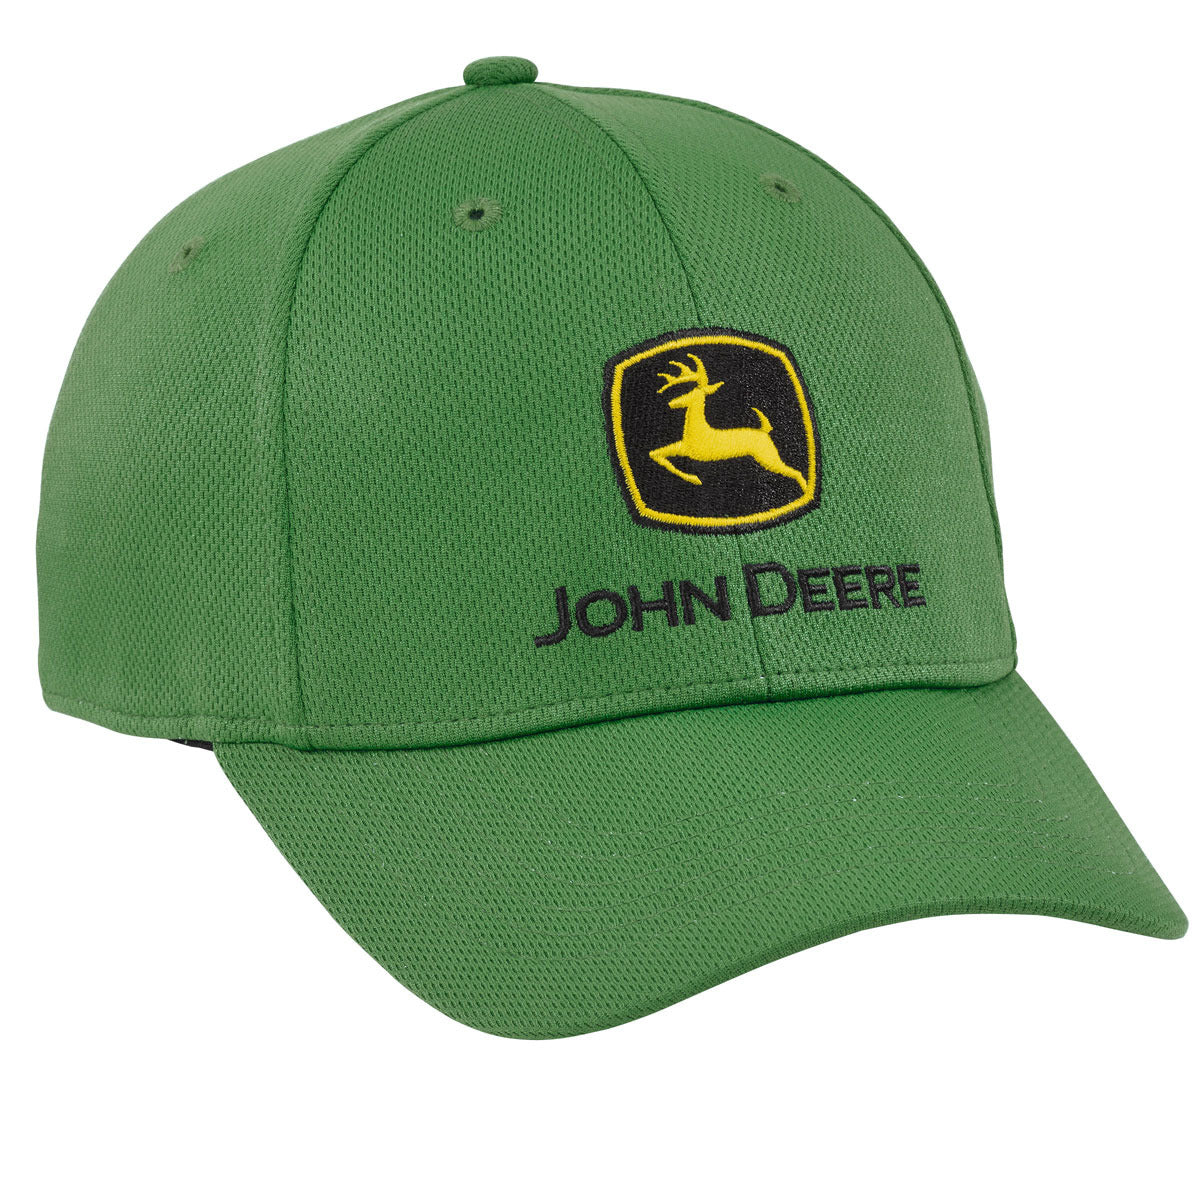 John Deere Green Fitted Performance Cap - LP69122